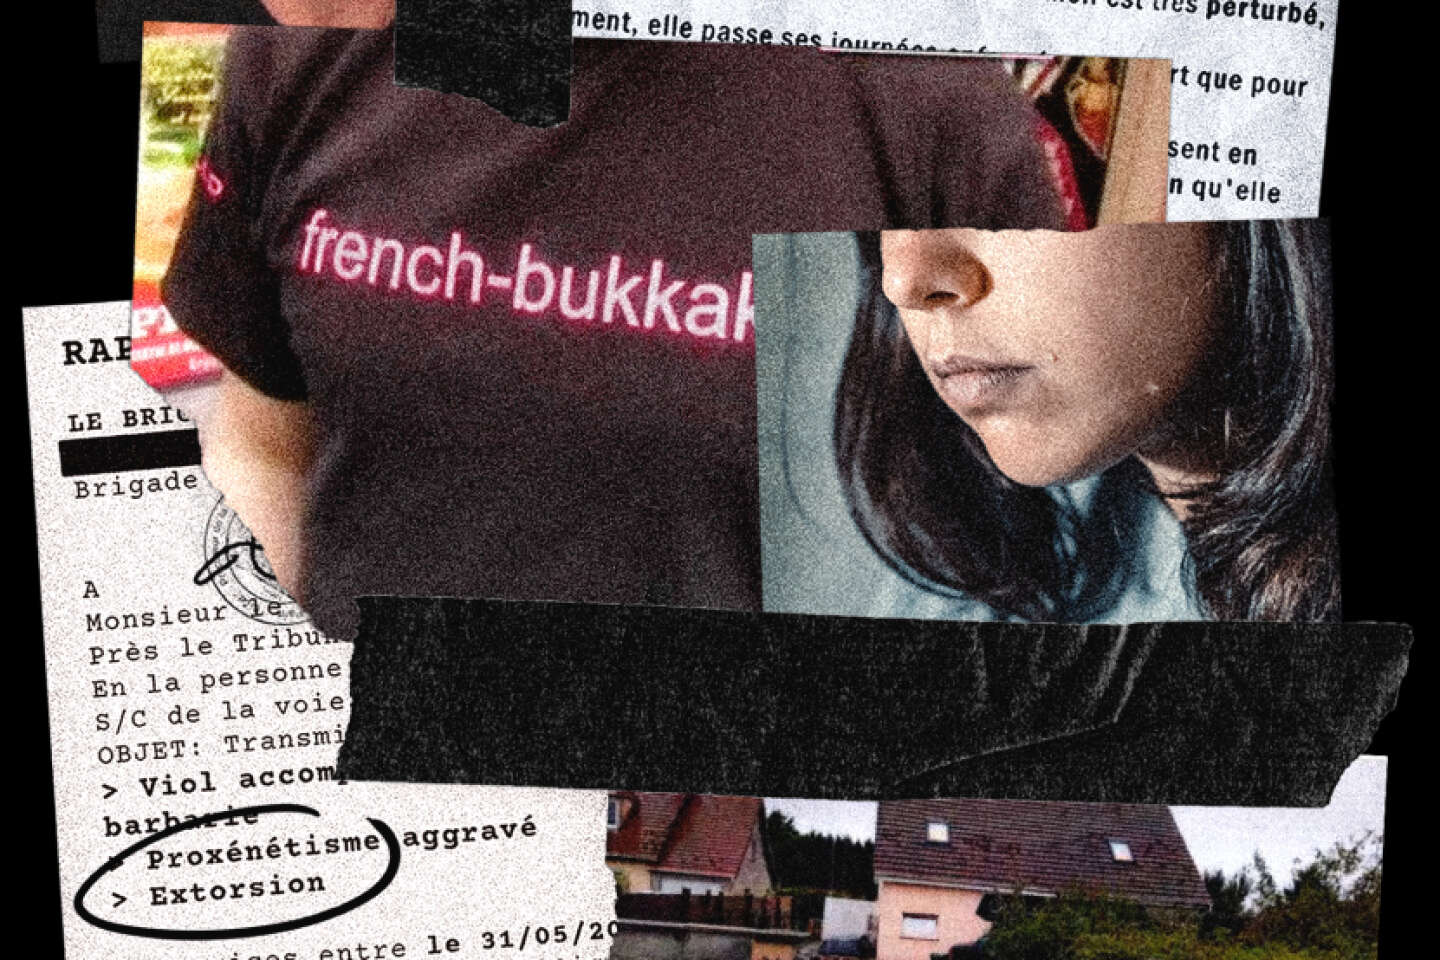 Violences sexuelles dans le porno trois nouvelles gardes à vue dans le dossier « French Bukkake » image image photo